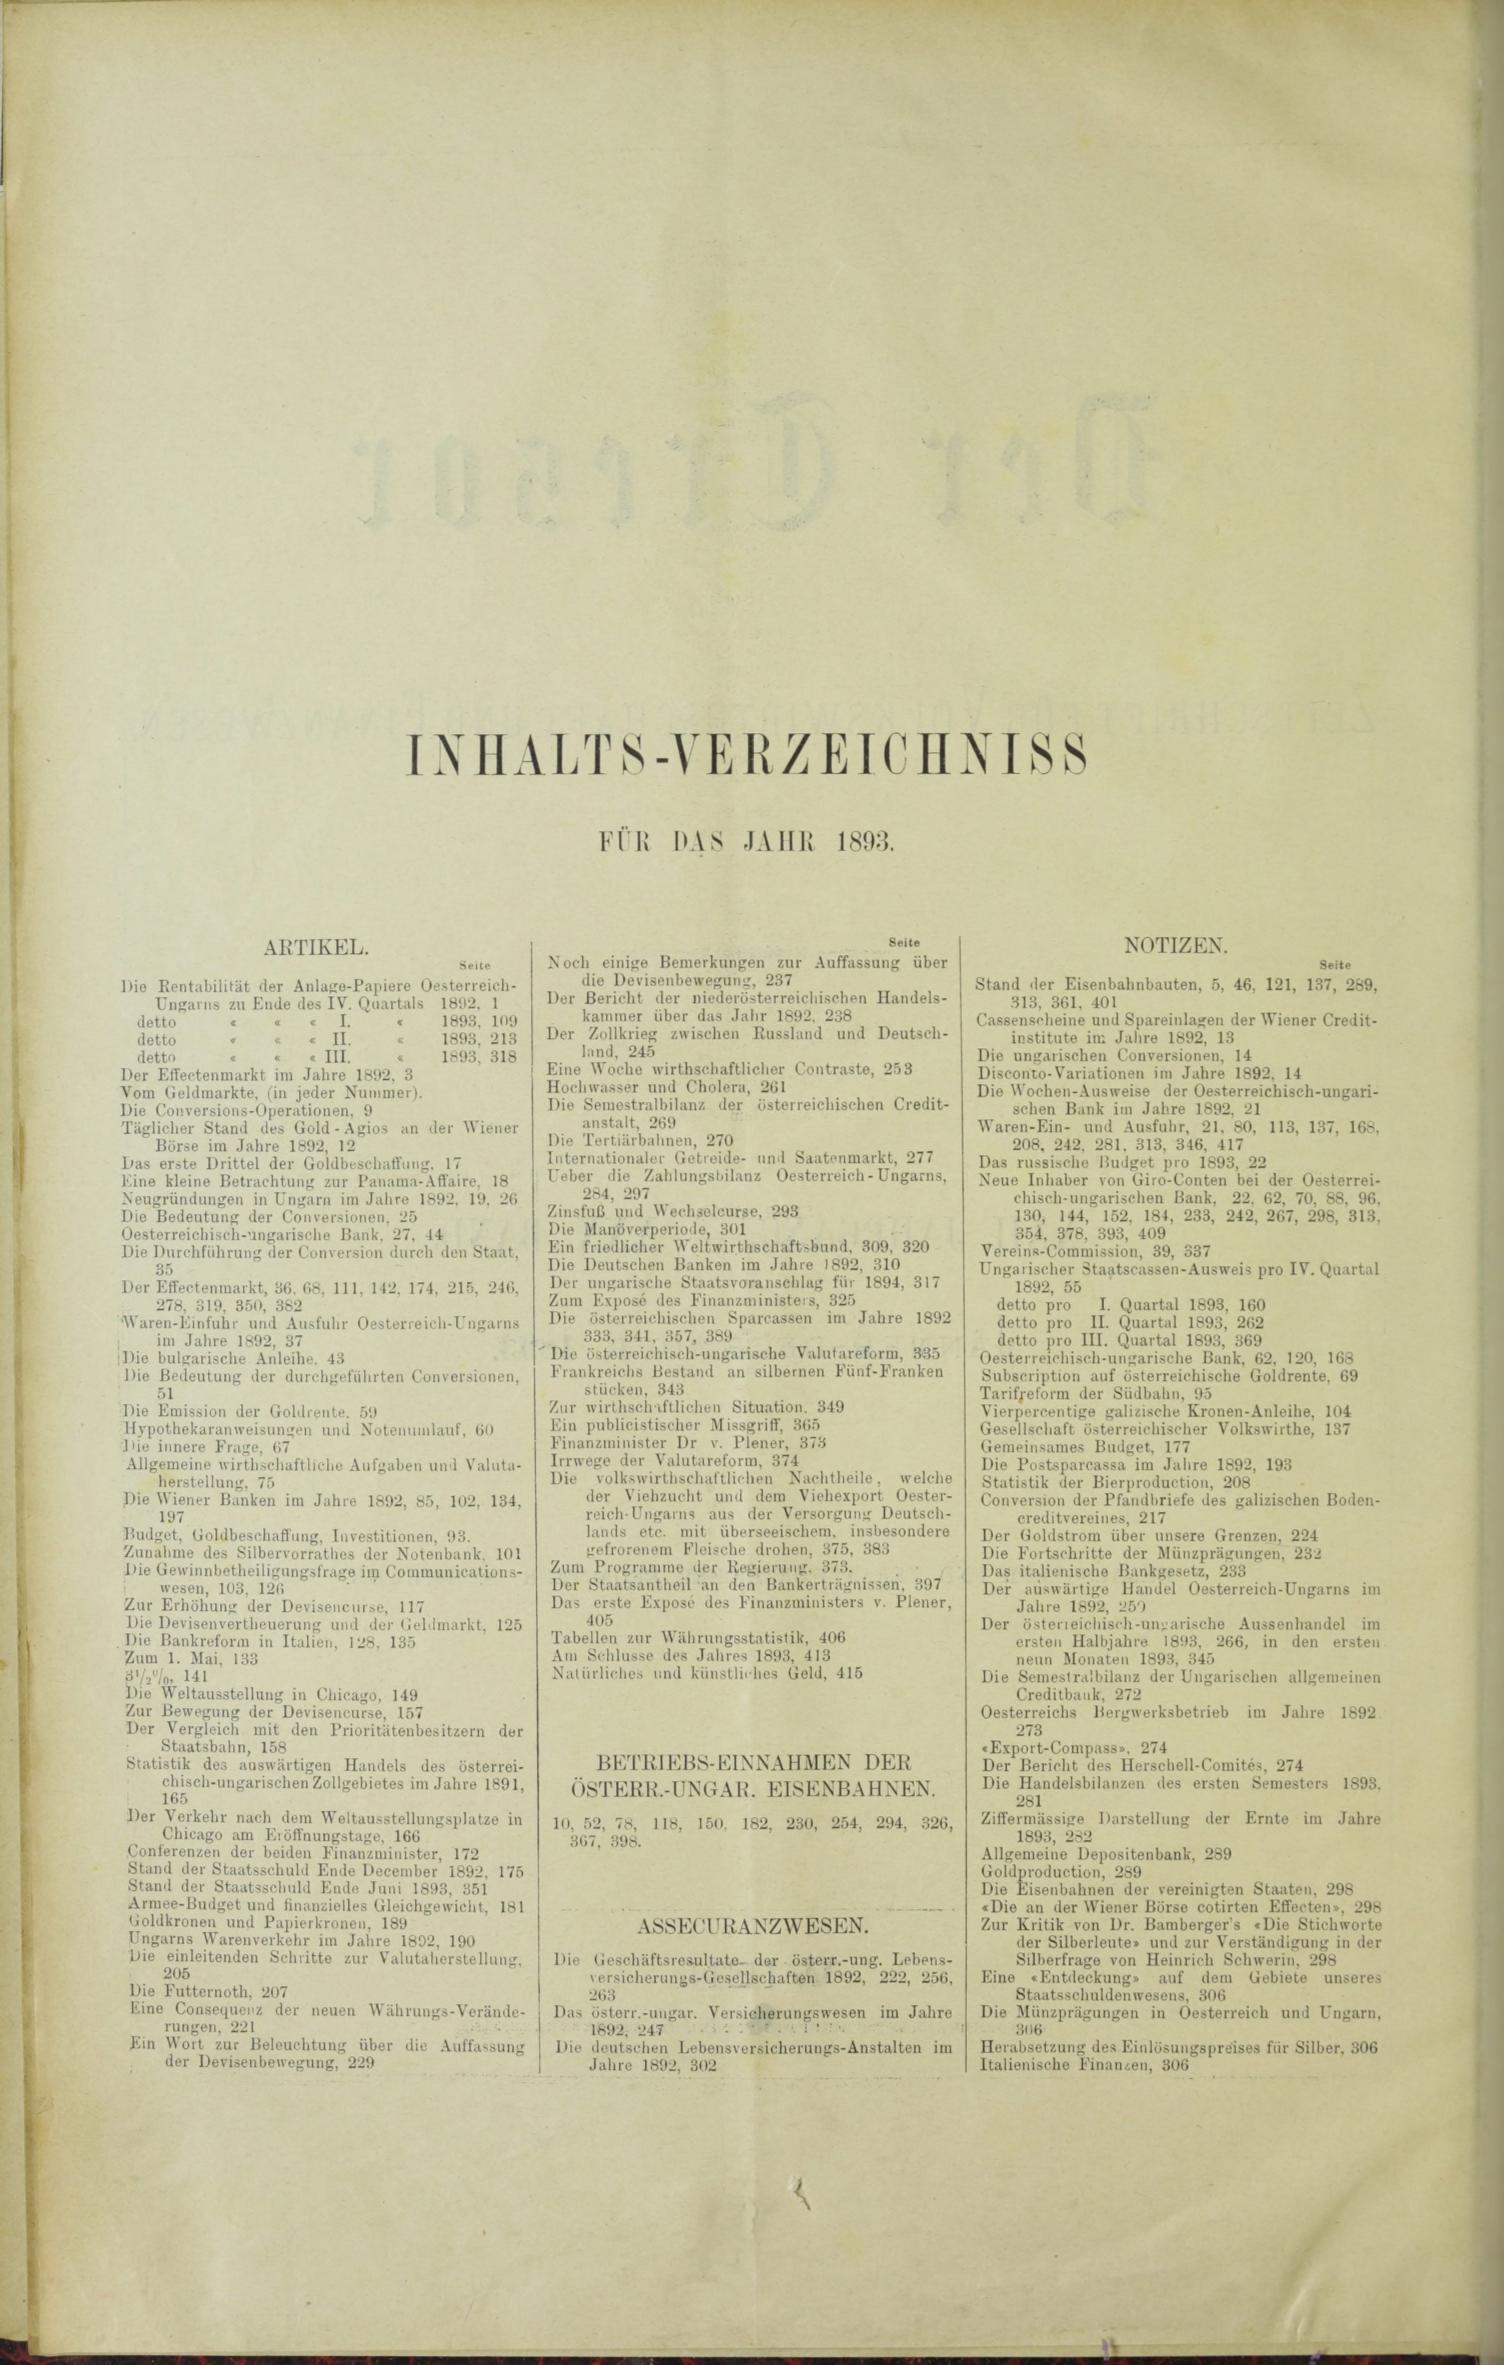 Der Tresor 04.05.1893 - Seite 10